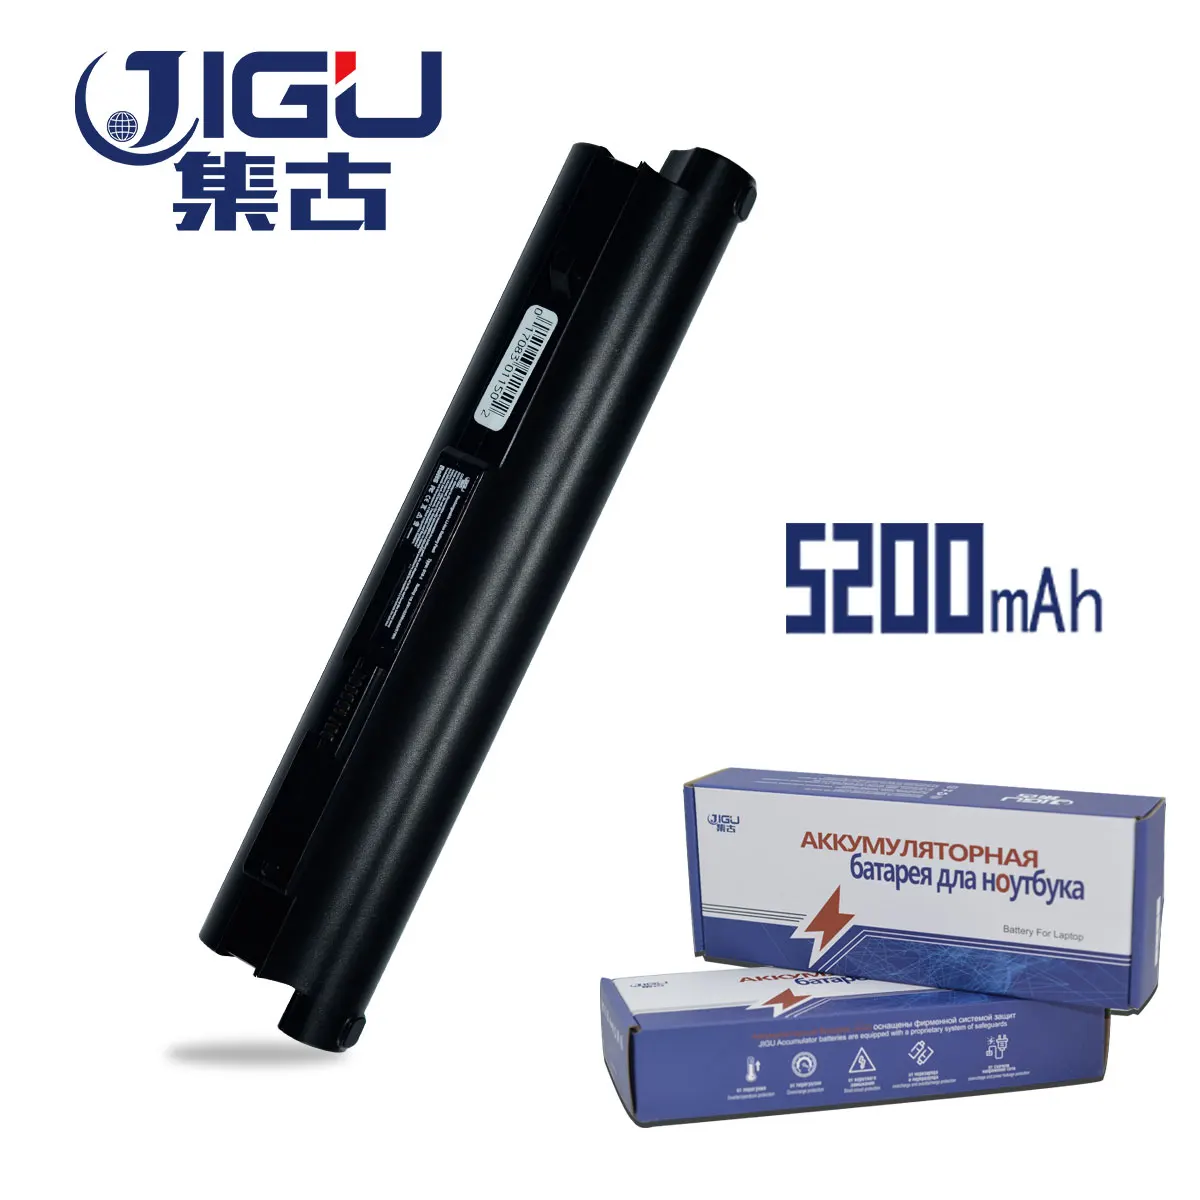 

JIGU Laptop Battery For Lenovo IdeaPad S10-2C S10-3C S10-2 20027 2957 55Y9382 57Y6273 57Y6275 L09C3B11 L09S3B11 L09S6Y11 LO9C312